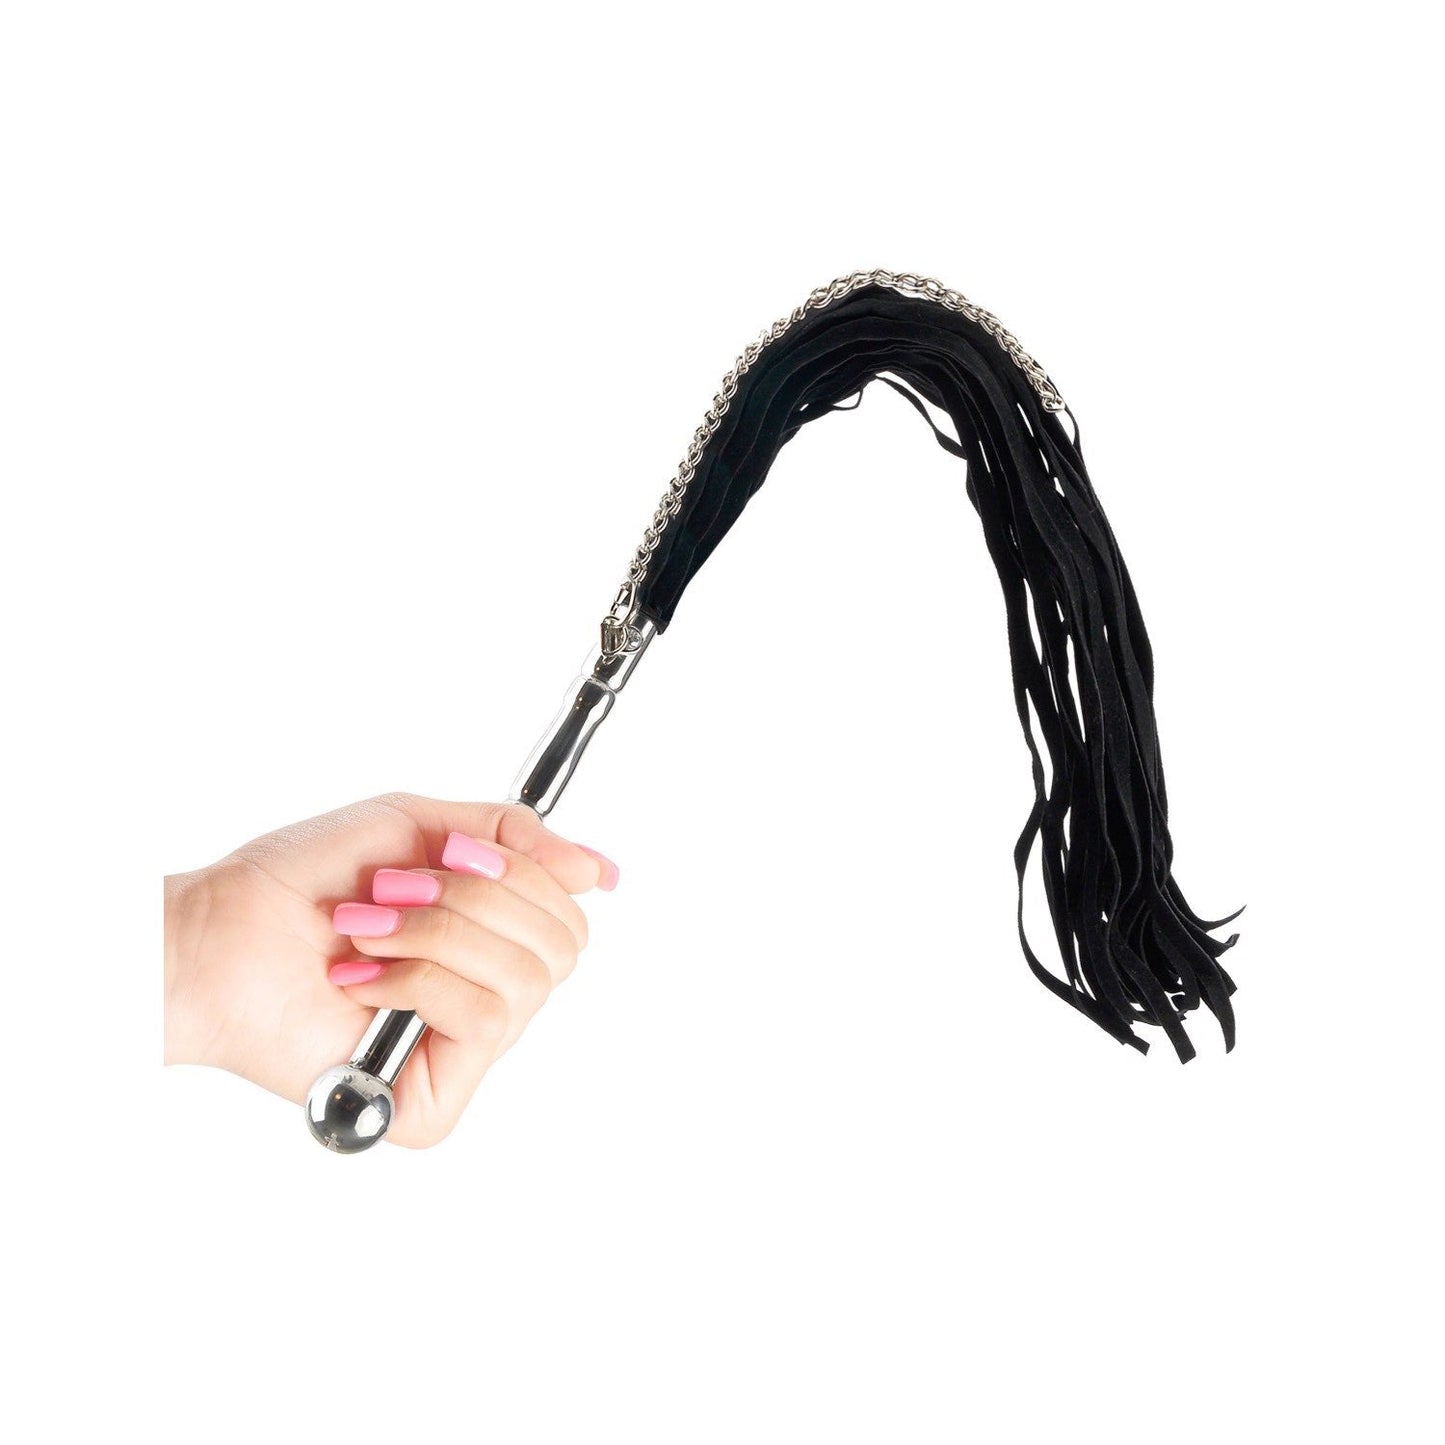 Beaded Metal Flogger - Black 60 cm Whip